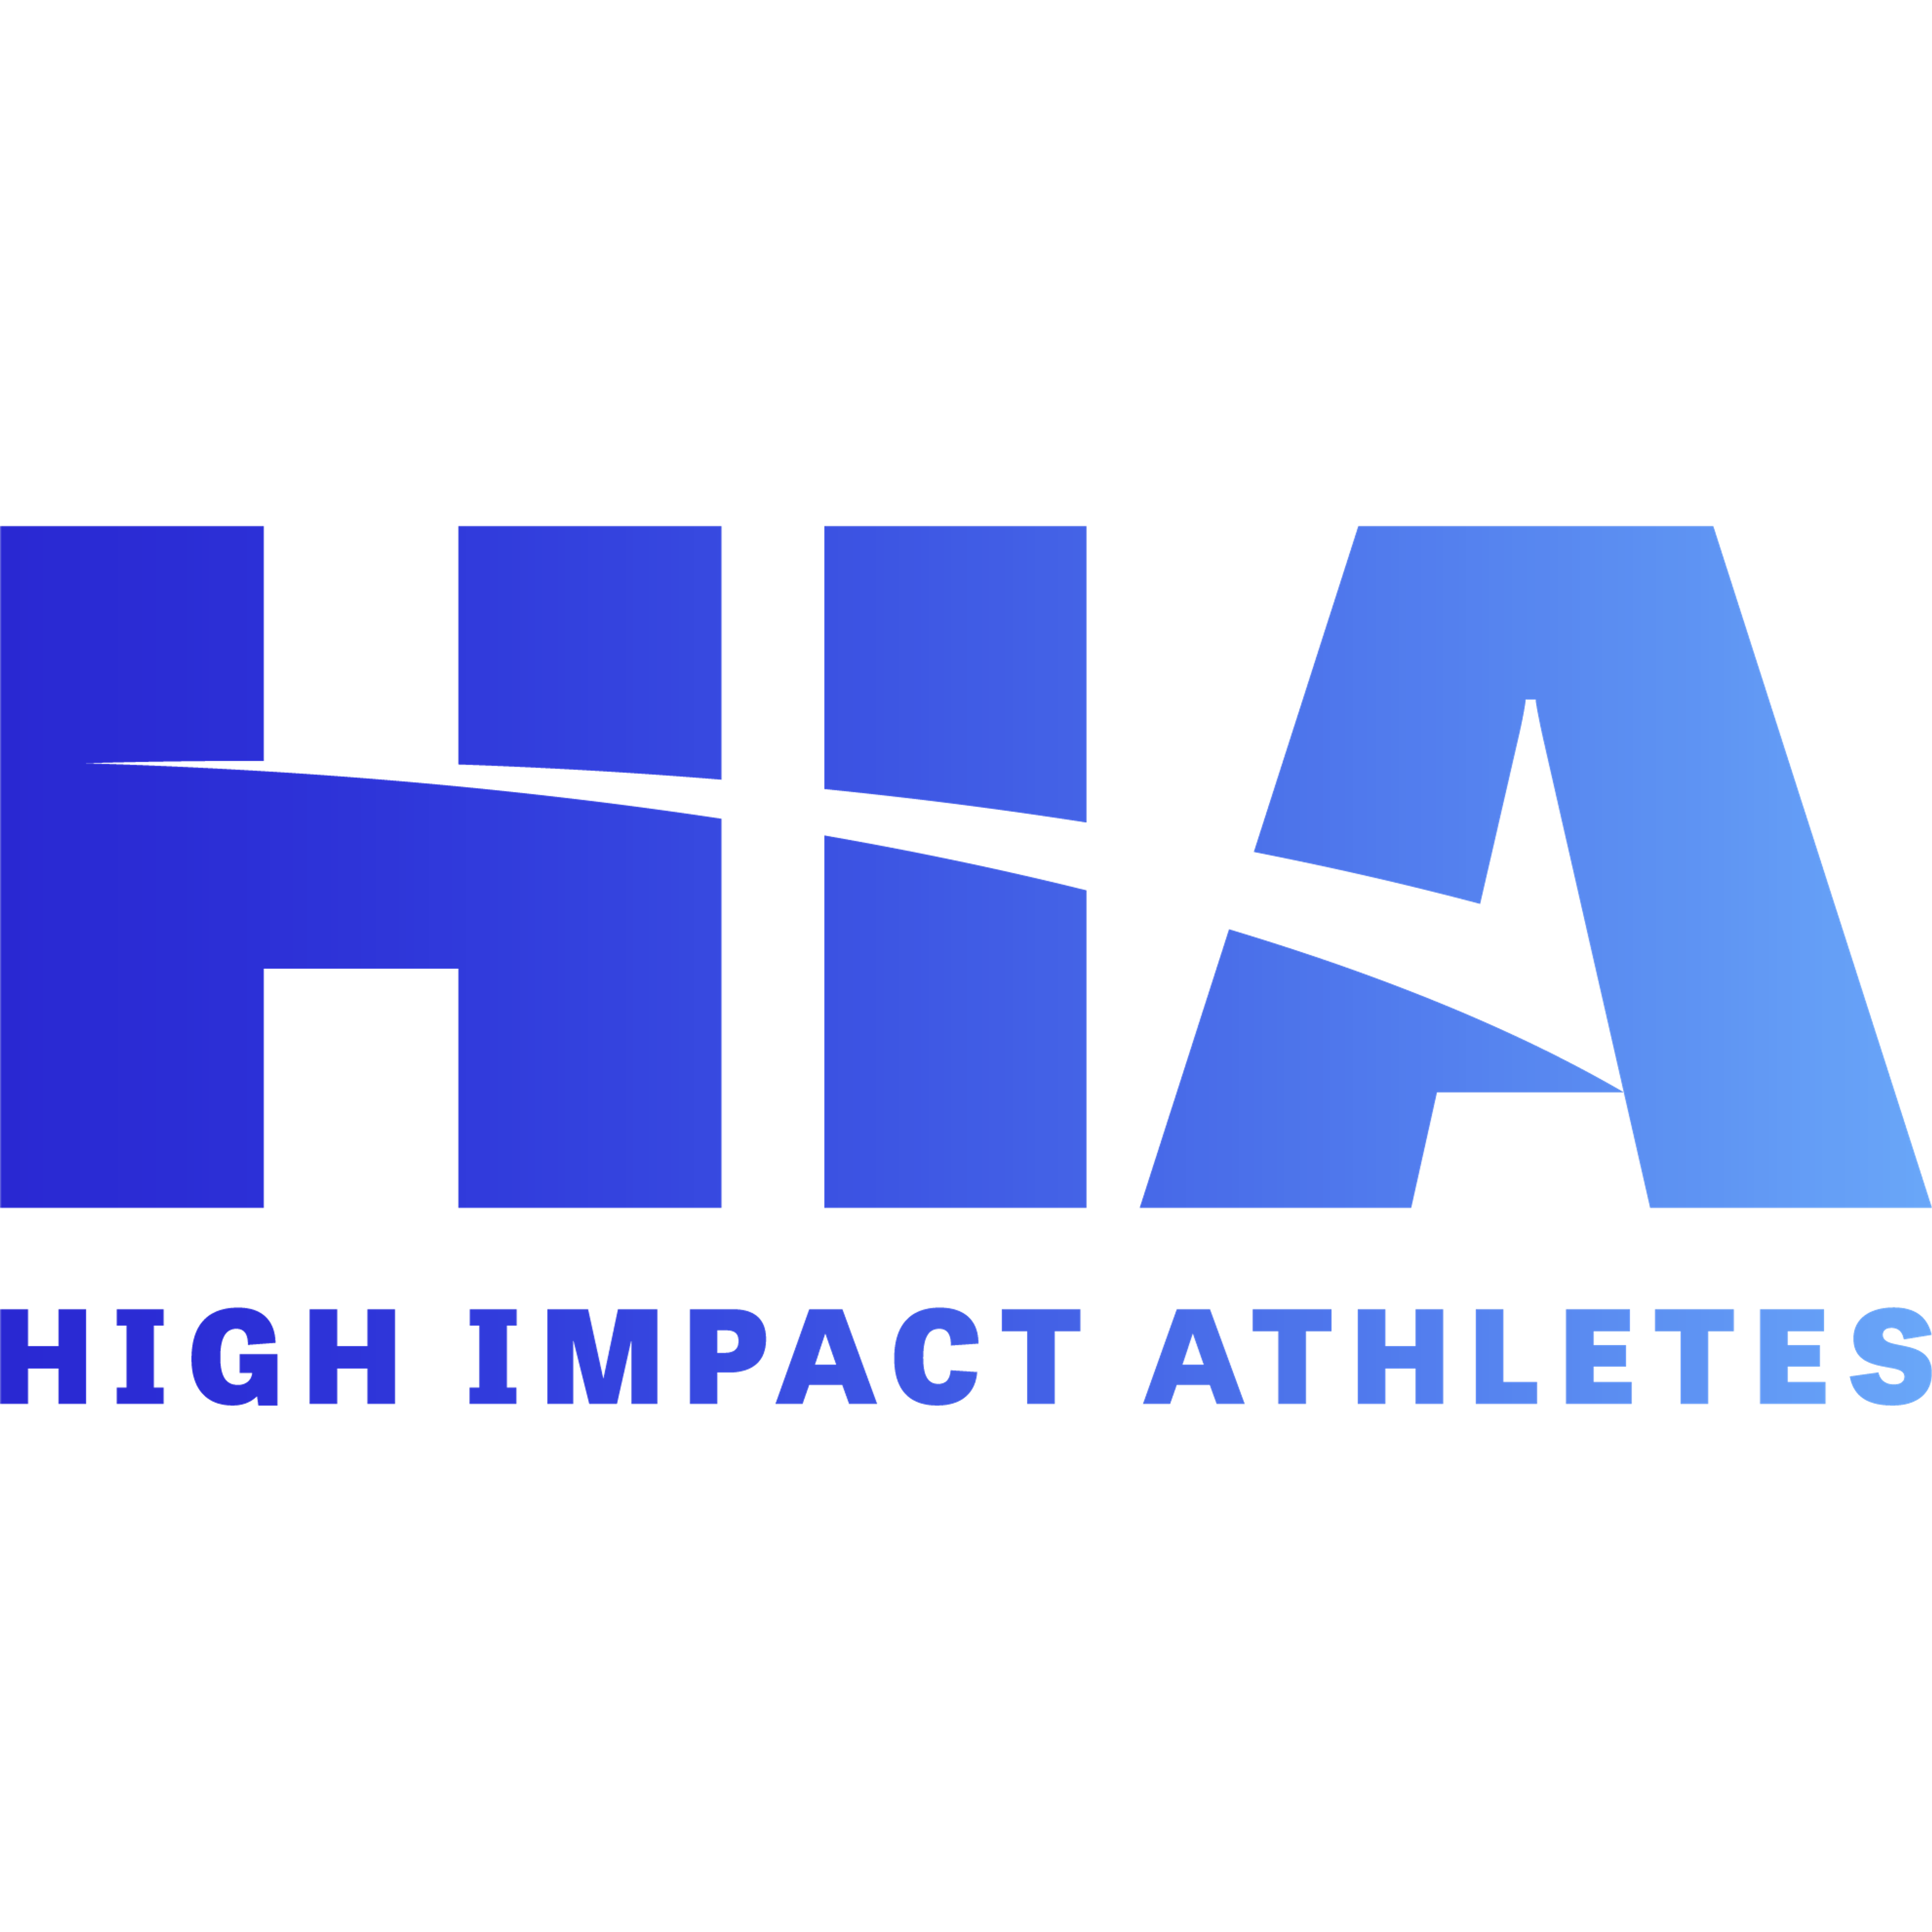 High Impact Athletes’ Global Health & Poverty Portfolio 